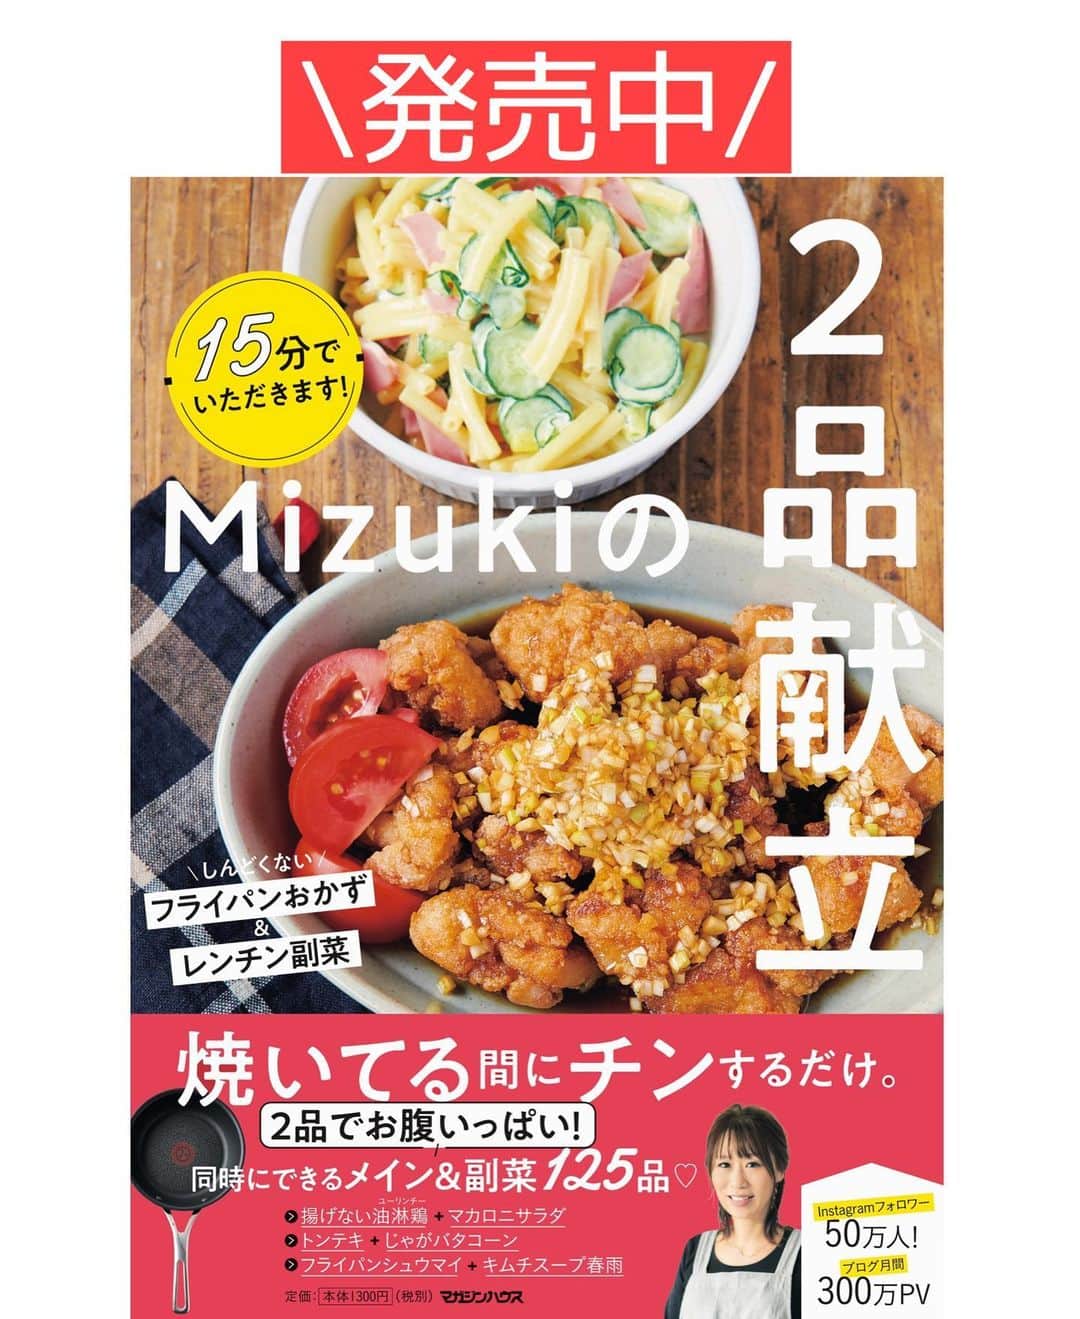 Mizuki【料理ブロガー・簡単レシピ】さんのインスタグラム写真 - (Mizuki【料理ブロガー・簡単レシピ】Instagram)「・﻿ 【#レシピ 】ーーーーーーー﻿ ホットケーキミックスで！﻿ りんごと紅茶のマフィン﻿ ーーーーーーーーーーーーー﻿ ﻿ ﻿ ﻿ おはようございます(*^^*)﻿ ﻿ 今日はホケミスイーツ☆﻿ \りんごと紅茶のマフィン/﻿ をご紹介させていただきます♩﻿ ﻿ 生地に紅茶を加えて﻿ フレッシュりんごを混ぜ込みました♡﻿ りんごは生のまま加えるから﻿ 超簡単に手間なく作れますよ〜！﻿ それでもちゃんと火が通り﻿ 煮たように柔らかく仕上がります♩﻿ ﻿ (昨日は『好きなお菓子』にご回答下さり﻿ ありがとうございました☺️💗)﻿ ﻿ ﻿ ﻿ ＿＿＿＿＿＿＿＿＿＿＿＿＿＿＿＿＿＿＿＿﻿ 【マフィン型1台(6個)分】﻿ りんご...1/2個(150g)﻿ ●卵...1個﻿ ●砂糖...大3﻿ ●牛乳...60ml﻿ ●サラダ油...60g﻿ ☆ホットケーキミックス...150g﻿ ☆紅茶(ティーバッグ)...4g﻿ ﻿ (準備)型にグラシンカップを敷く。オーブンを180度に予熱する。﻿ 1.りんごは皮を剥いて1cm角に切り、薄い塩水(分量外)に晒して水気を切る。﻿ 2.ボウルに●を入れて泡立て器でよく混ぜる。続けて☆も加え、ゴムベラさっくり混ぜる。﻿ 3.粉っぽさが残っている内に1を加えて更に混ぜ、型に注ぎ、予熱したオーブンで20分焼く。﻿ ￣￣￣￣￣￣￣￣￣￣￣￣￣￣￣￣￣￣￣￣﻿ ﻿ ﻿ ﻿ 《ポイント》﻿ ︎♦︎りんごの種類はお好みで♩﻿ ♦︎りんごは粉っぽさが残っている内に加え、全体に馴染むまで混ぜるだけでOK！﻿ ♦︎マフィンカップで焼いても♩﻿ ﻿ ﻿ ﻿ ﻿ ﻿ ﻿ ﻿ ﻿ ⭐️発売中⭐️3刷重版が決まりました😭﻿ 本当にありがとうございます(涙)﻿ _____________________________________﻿ \15分でいただきます/﻿ 📕#Mizukiの2品献立 📕﻿ (9月24日発売・マガジンハウス)﻿ ￣￣￣￣￣￣￣￣￣￣￣￣￣￣￣￣￣﻿ ﻿ 忙しい私たちには﻿ 2品くらいがちょうどいい！﻿ 『しんどくない献立、考えました』﻿ ￣￣￣￣￣￣￣￣￣￣￣￣￣￣￣￣﻿ ﻿ ーーーーーPART.1 ーーーーー﻿ 【Mizukiのお墨つき！２品献立ベスト10】﻿ 約15分でできる10献立をご紹介！﻿ メインは全部フライパン、副菜はレンチンor混ぜるだけ♡﻿ ﻿ ーーーーーPART.2 ーーーーー﻿ 【フライパンひとつ！今夜のメインおかず】﻿ 献立の主役になる肉や魚のおかず50品！﻿ Part3の副菜と組み合わせれば﻿ 献立のバリエーションが広がりますよ♩﻿ ﻿ ーーーーー PART.3 ーーーーー﻿ 【合間に作れる！ 野菜別かんたん副菜】﻿ レンチンor和えるだけの副菜レシピを﻿ 素材別にたっぷり収録♩﻿ ﻿ ーーーーー番外編ーーーーー﻿ 【ひとつで満足！ご飯＆麺】﻿ 【具だくさん！おかずスープ】﻿ 【オーブンいらずのおやつレシピ】﻿ ￣￣￣￣￣￣￣￣￣￣￣￣￣￣￣￣￣￣﻿ (ハイライトにリンク🔗あります💗)﻿ ﻿ ﻿ ﻿ ﻿ ＿＿＿＿＿＿＿＿＿＿＿＿＿＿＿＿＿＿﻿ レシピを作って下さった際や﻿ レシピ本についてのご投稿には﻿ タグ付け( @mizuki_31cafe )して﻿ お知らせいただけると嬉しいです😊💕﻿ ￣￣￣￣￣￣￣￣￣￣￣￣￣￣￣￣￣￣﻿ ﻿ ﻿ ﻿ ﻿ #ホットケーキミックス#ホケミ#紅茶マフィン#お菓子#Mizuki#簡単レシピ#時短レシピ#節約レシピ#料理#フーディーテーブル#マカロニメイト#おうちごはん#デリスタグラマー#料理好きな人と繋がりたい#食べ物#料理記録#おうちごはんlover#写真好きな人と繋がりたい#foodpic#cooking#recipe#lin_stagrammer#foodporn#yummy#f52grams#りんごと紅茶のマフィンm」11月22日 9時43分 - mizuki_31cafe